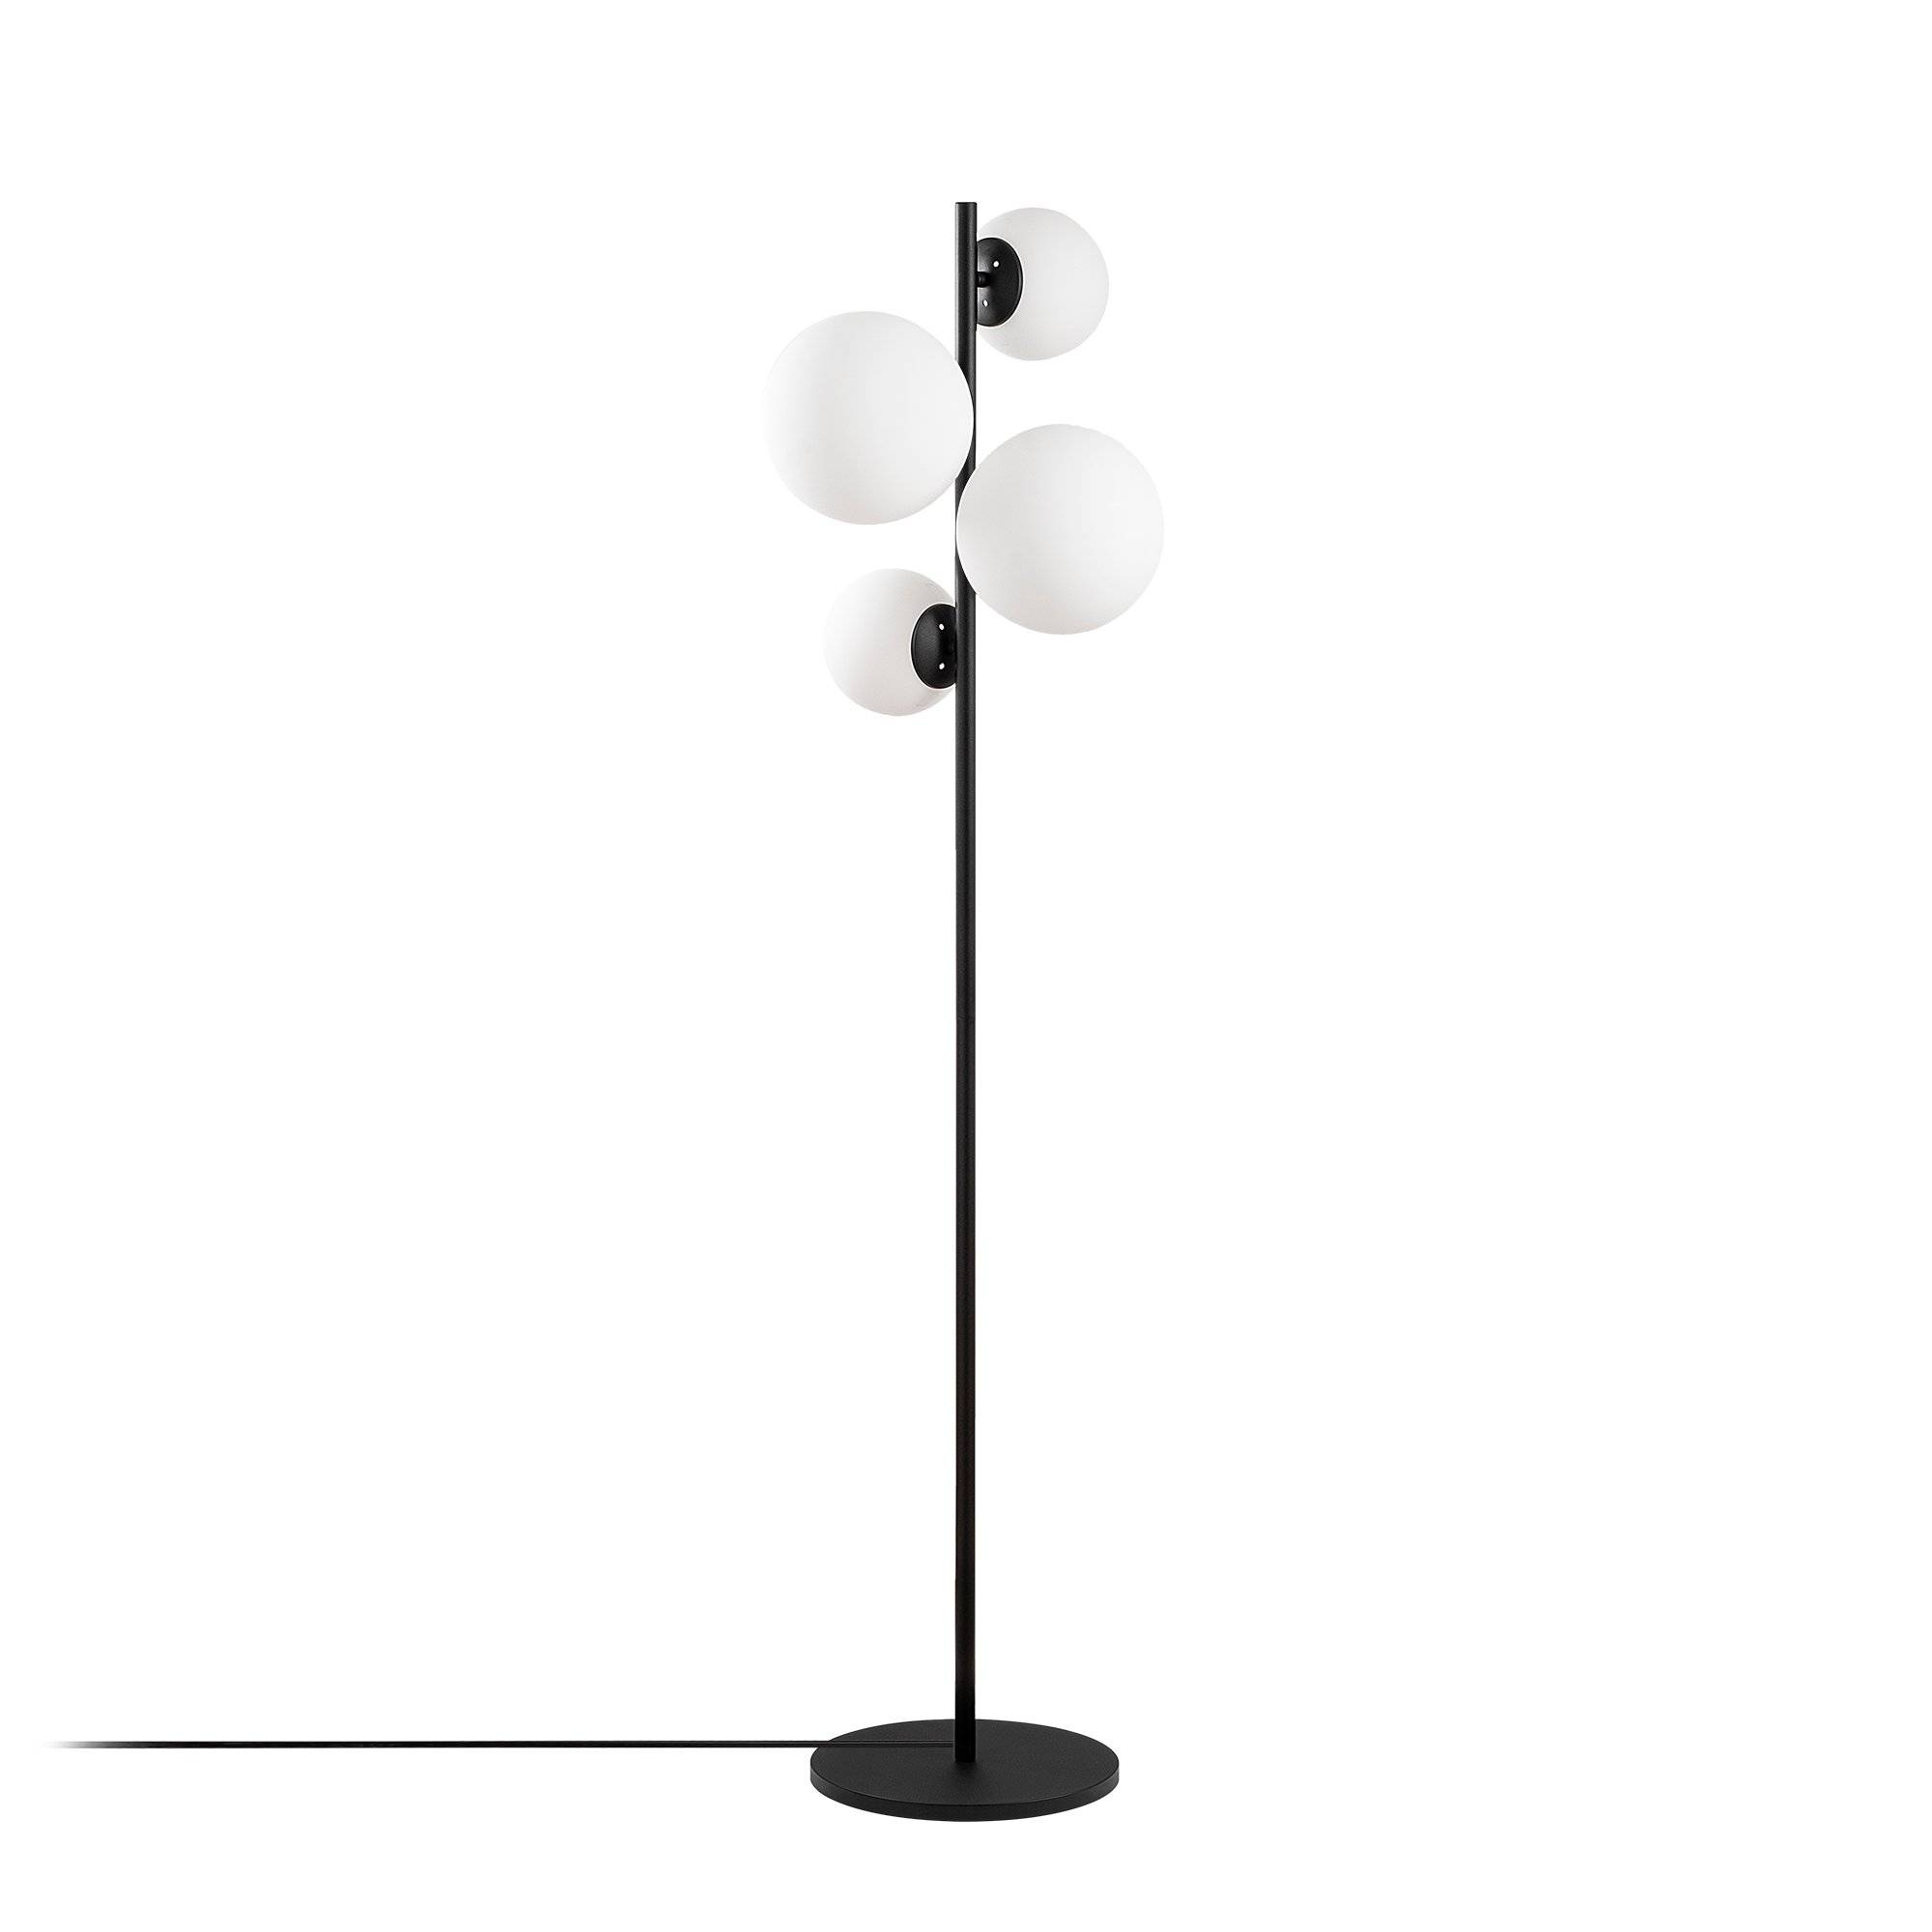 Stehleuchte mit 4 kugelförmigen Lampen Chaga H163cm Weißes Glas und schwarzes Metall